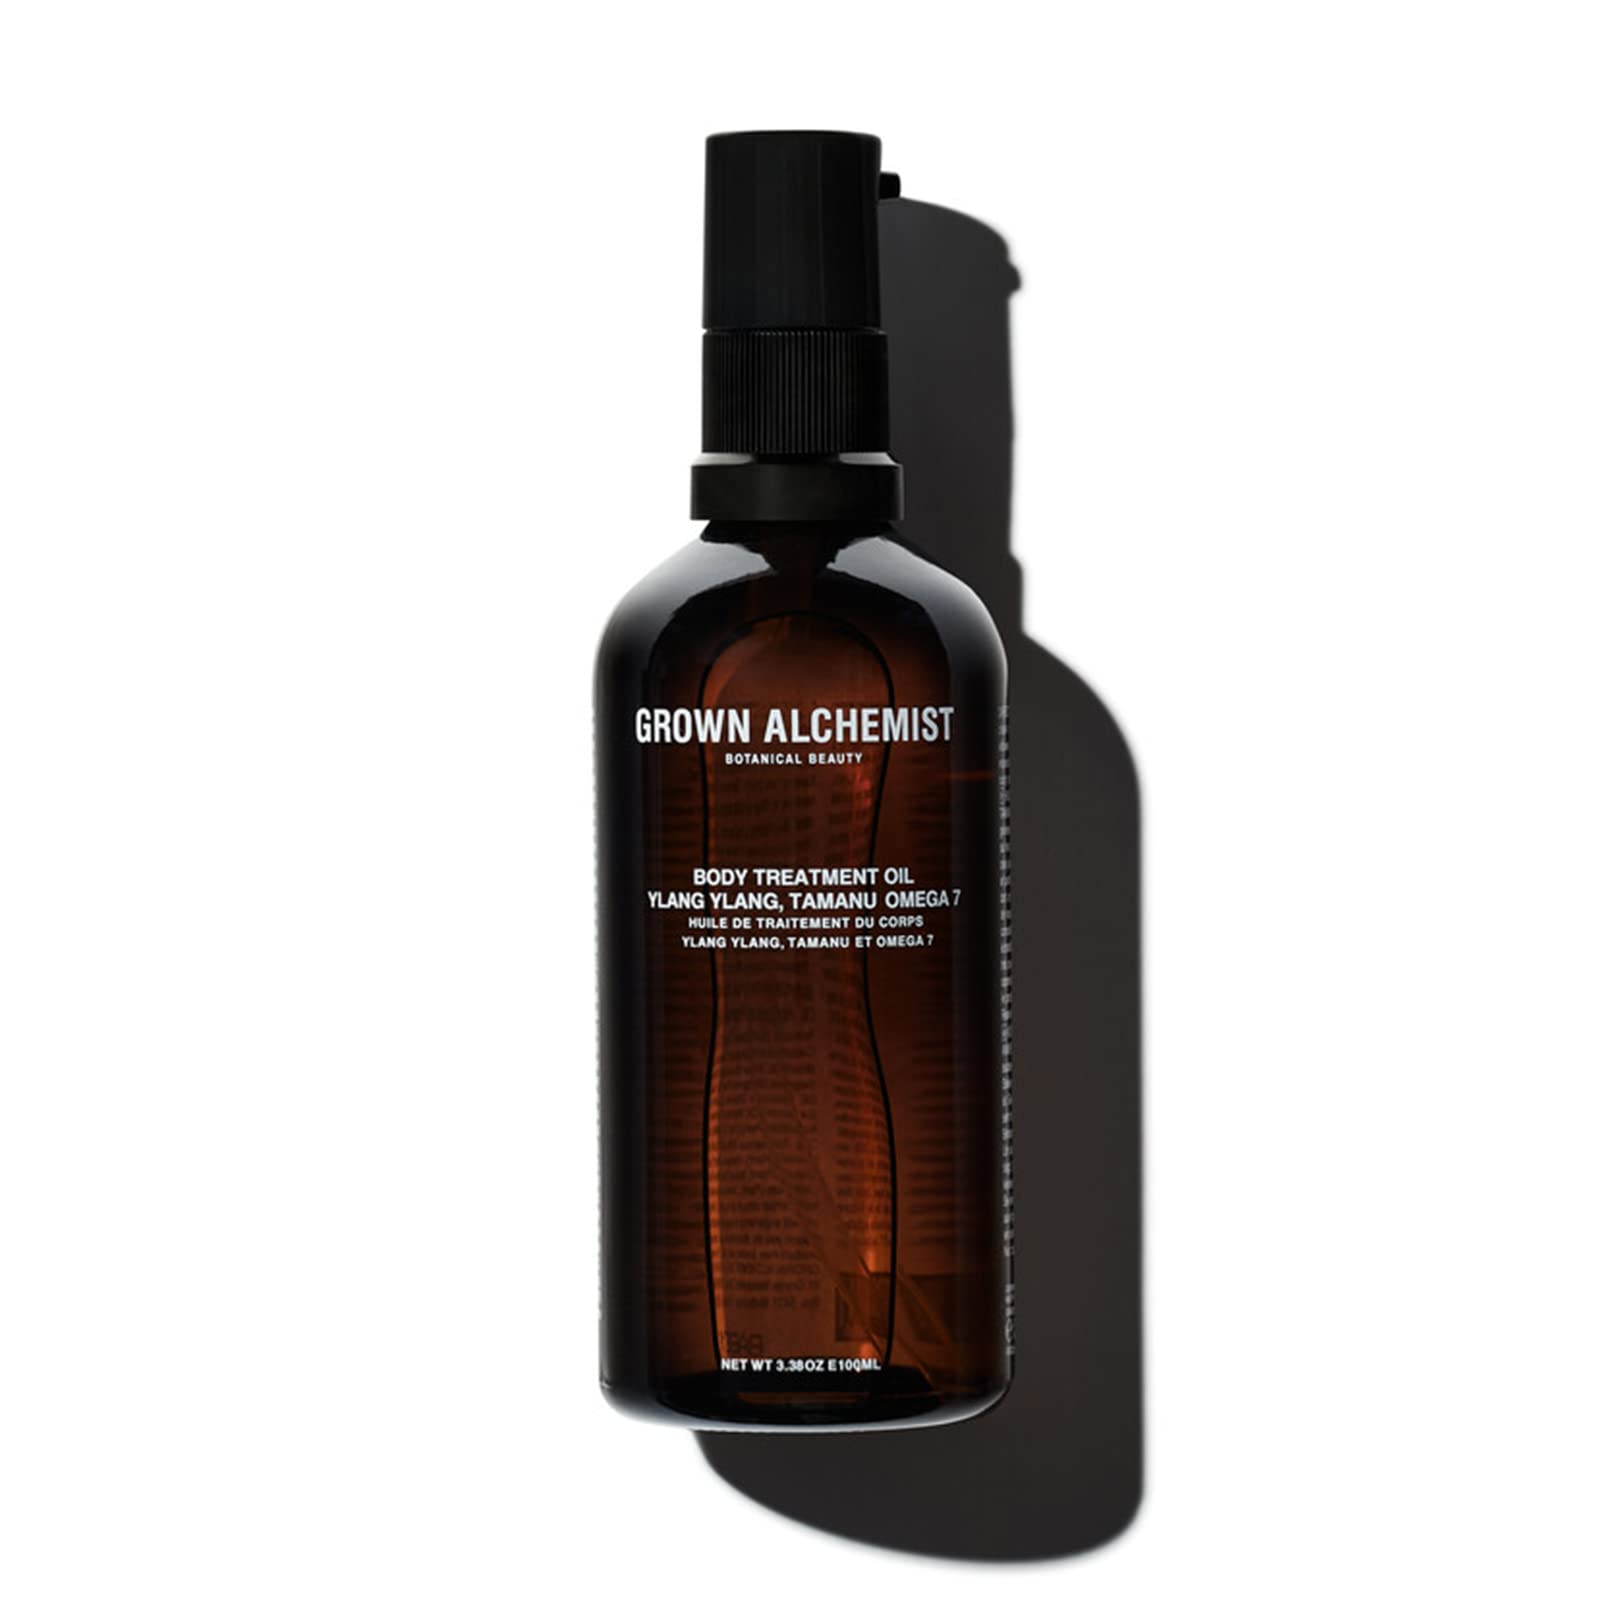 Grown Alchemist Body Treatment Oil: Ylang Ylang, Tamanu, Omega 7 - Absorbierendes Körperöl für eine geschmeidige und glatte Haut - Hagebuttenöl erhöht die Elastizität der Haut - 100mL